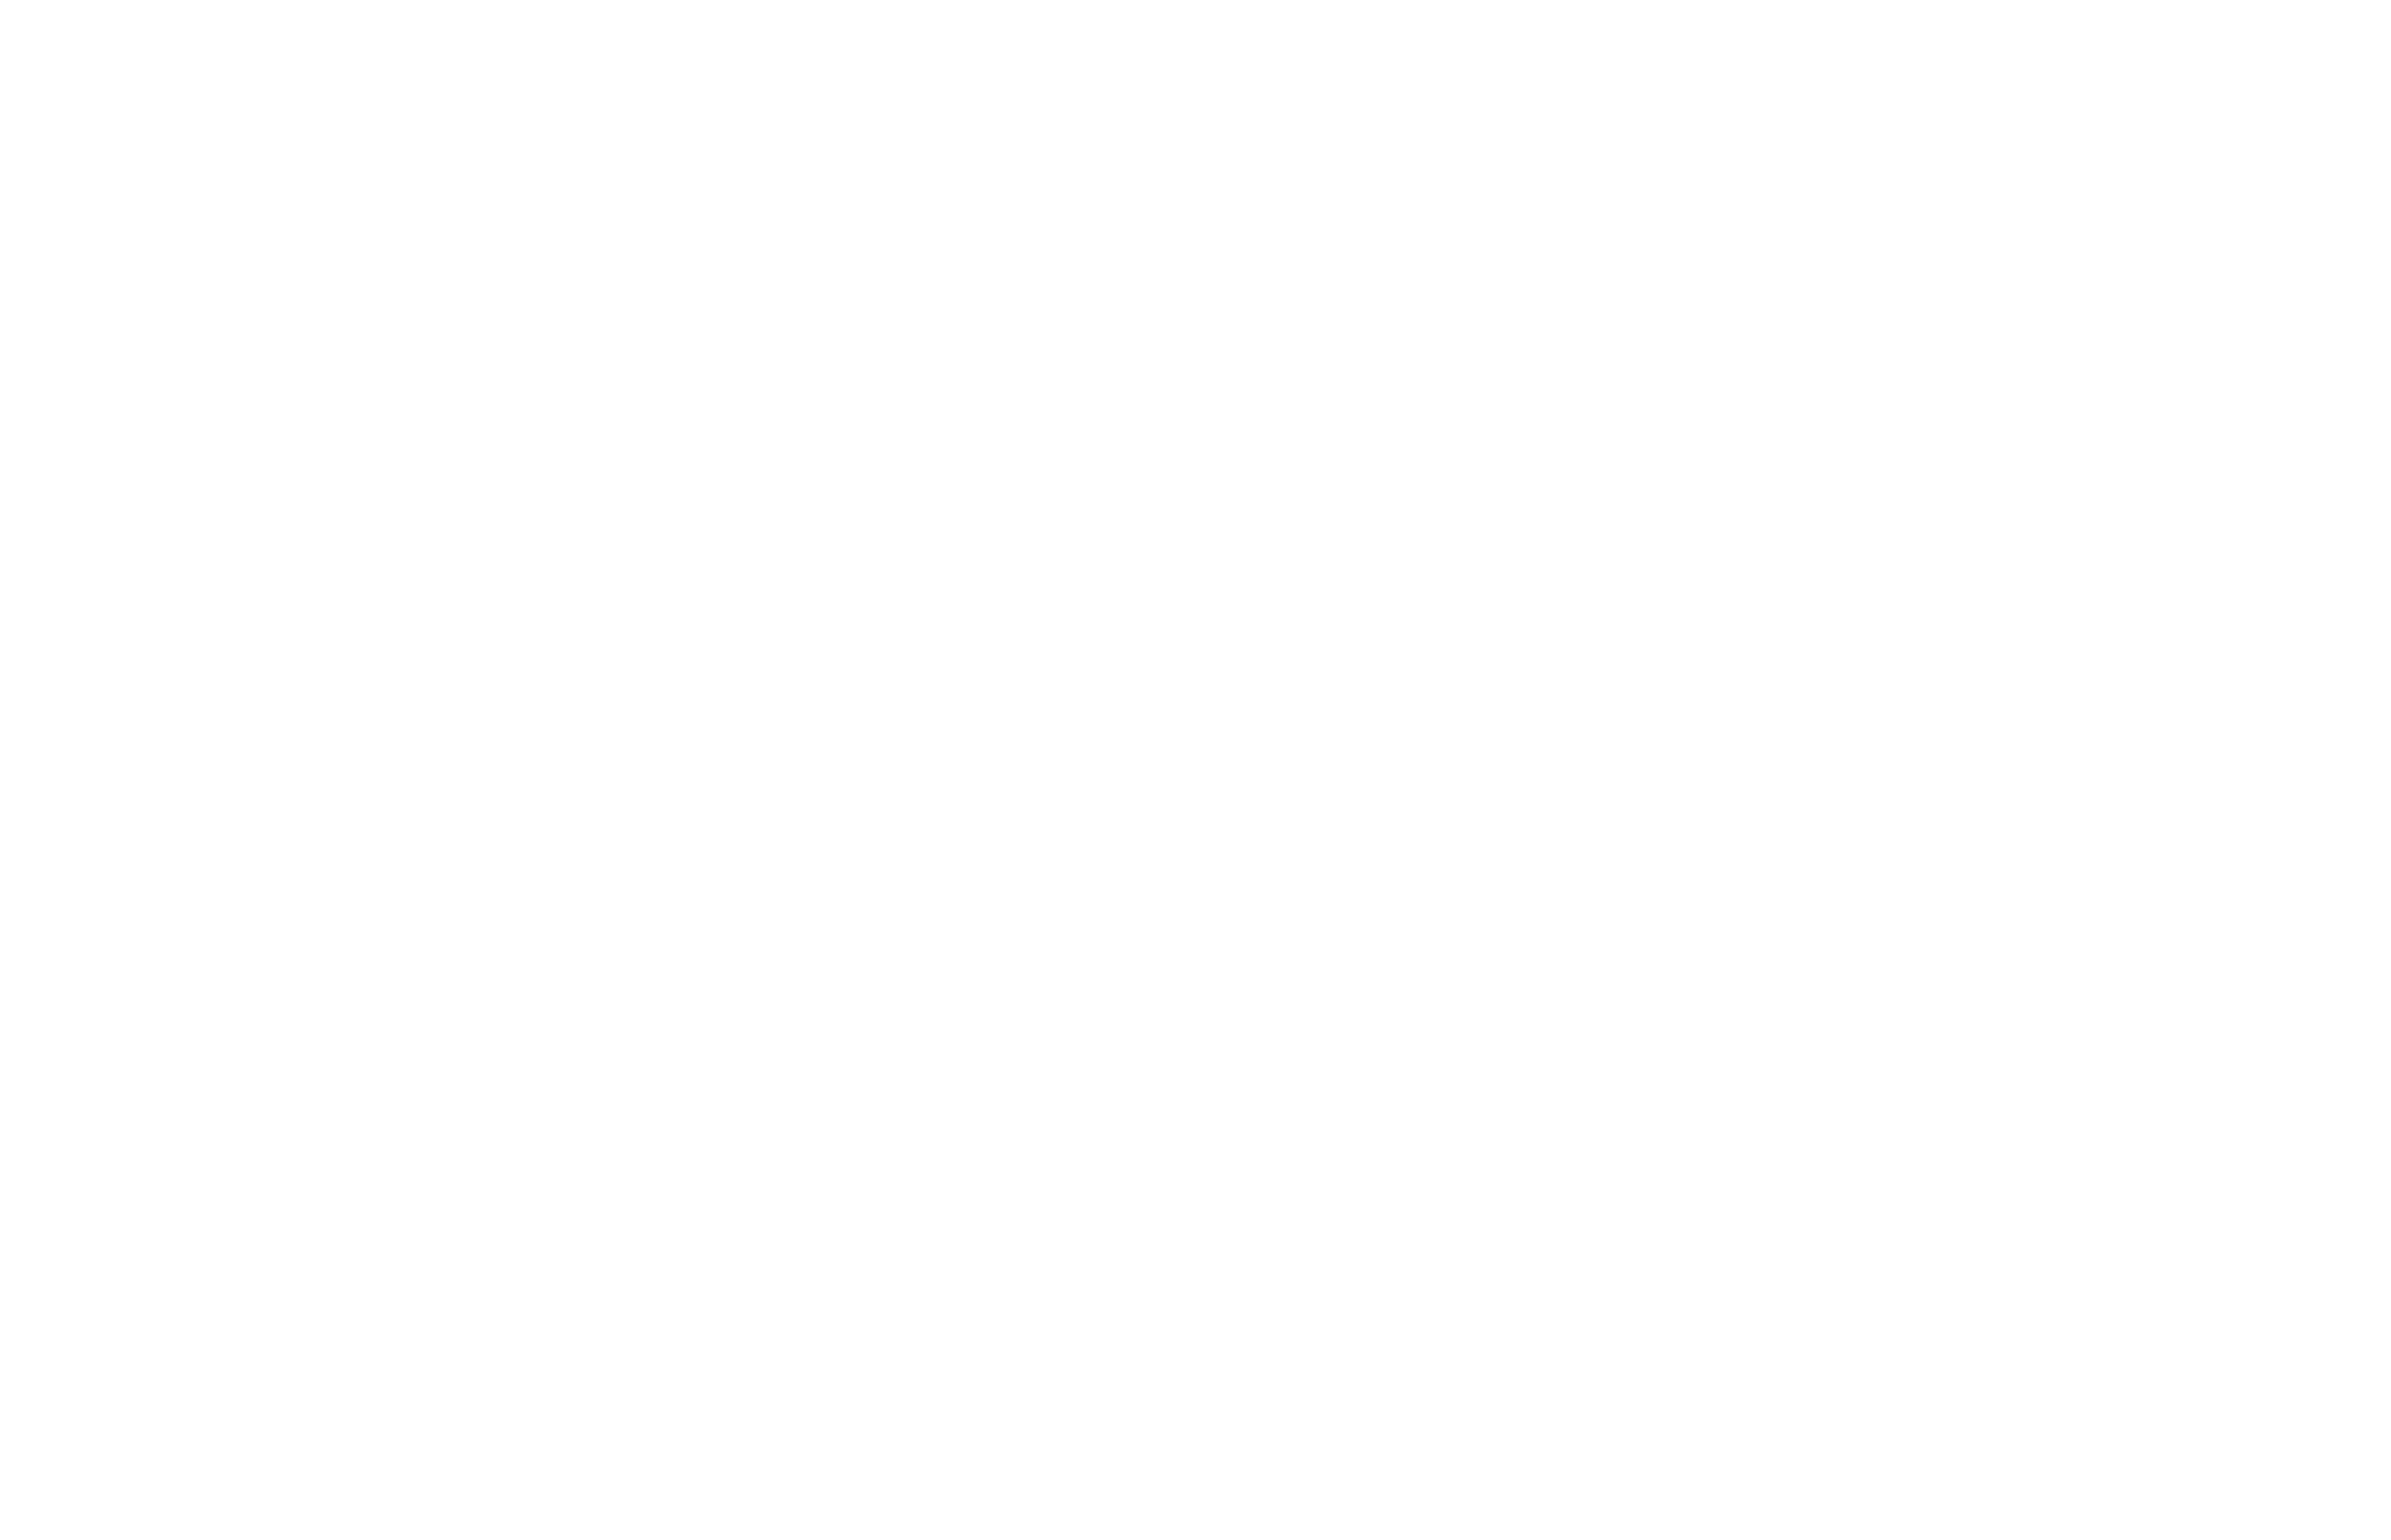 Allen Financial Insurance Group